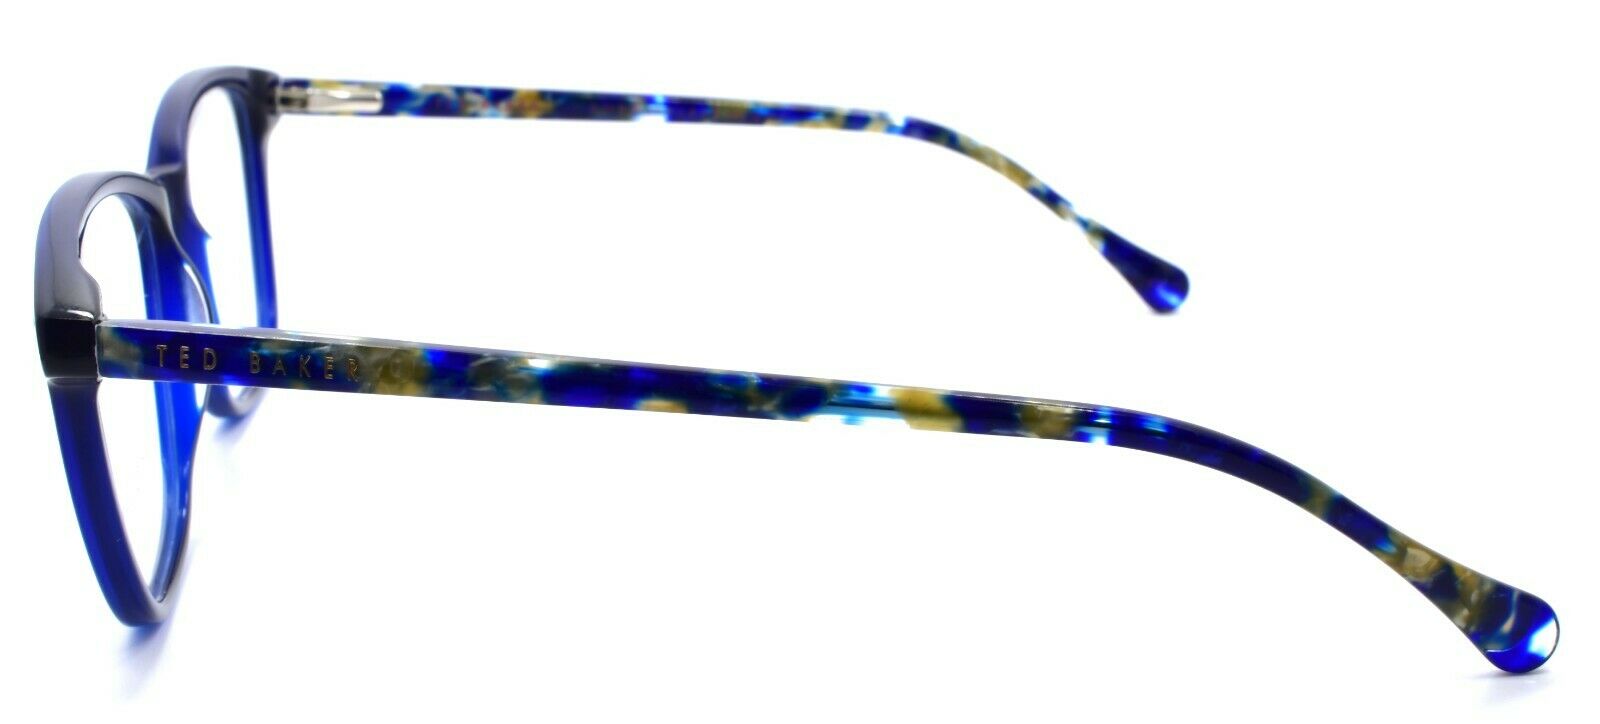 3-Ted Baker Maple 9131 608 Women's Eyeglasses Frames 51-15-140 Navy Blue-4894327181407-IKSpecs